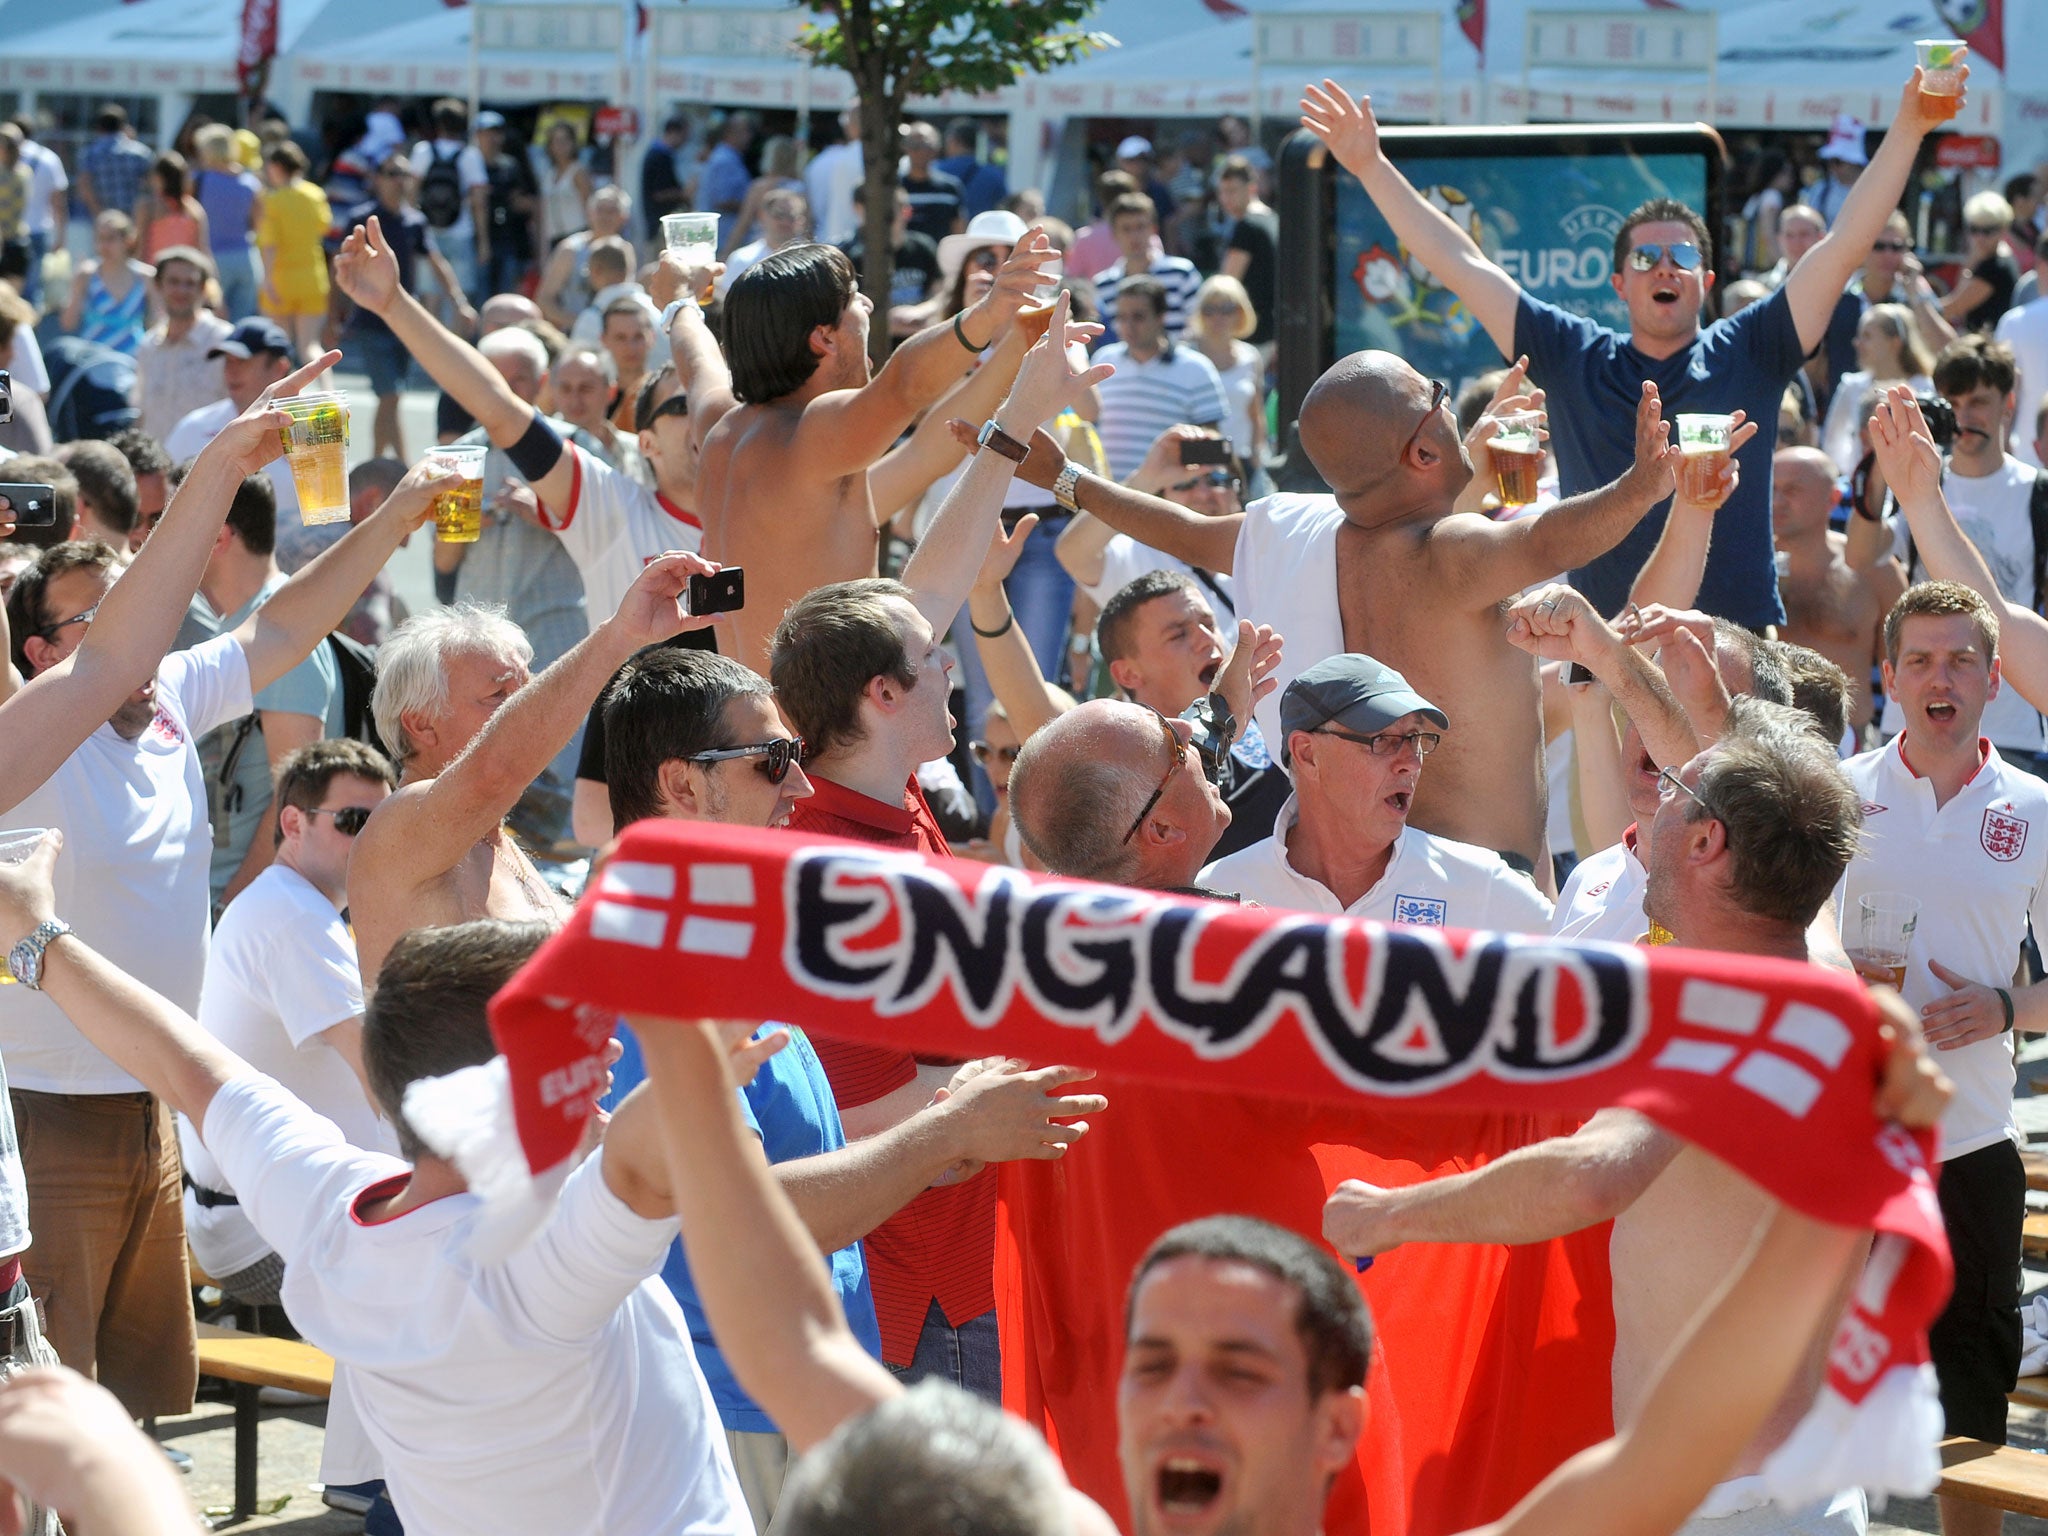 England fans in Kiev last year